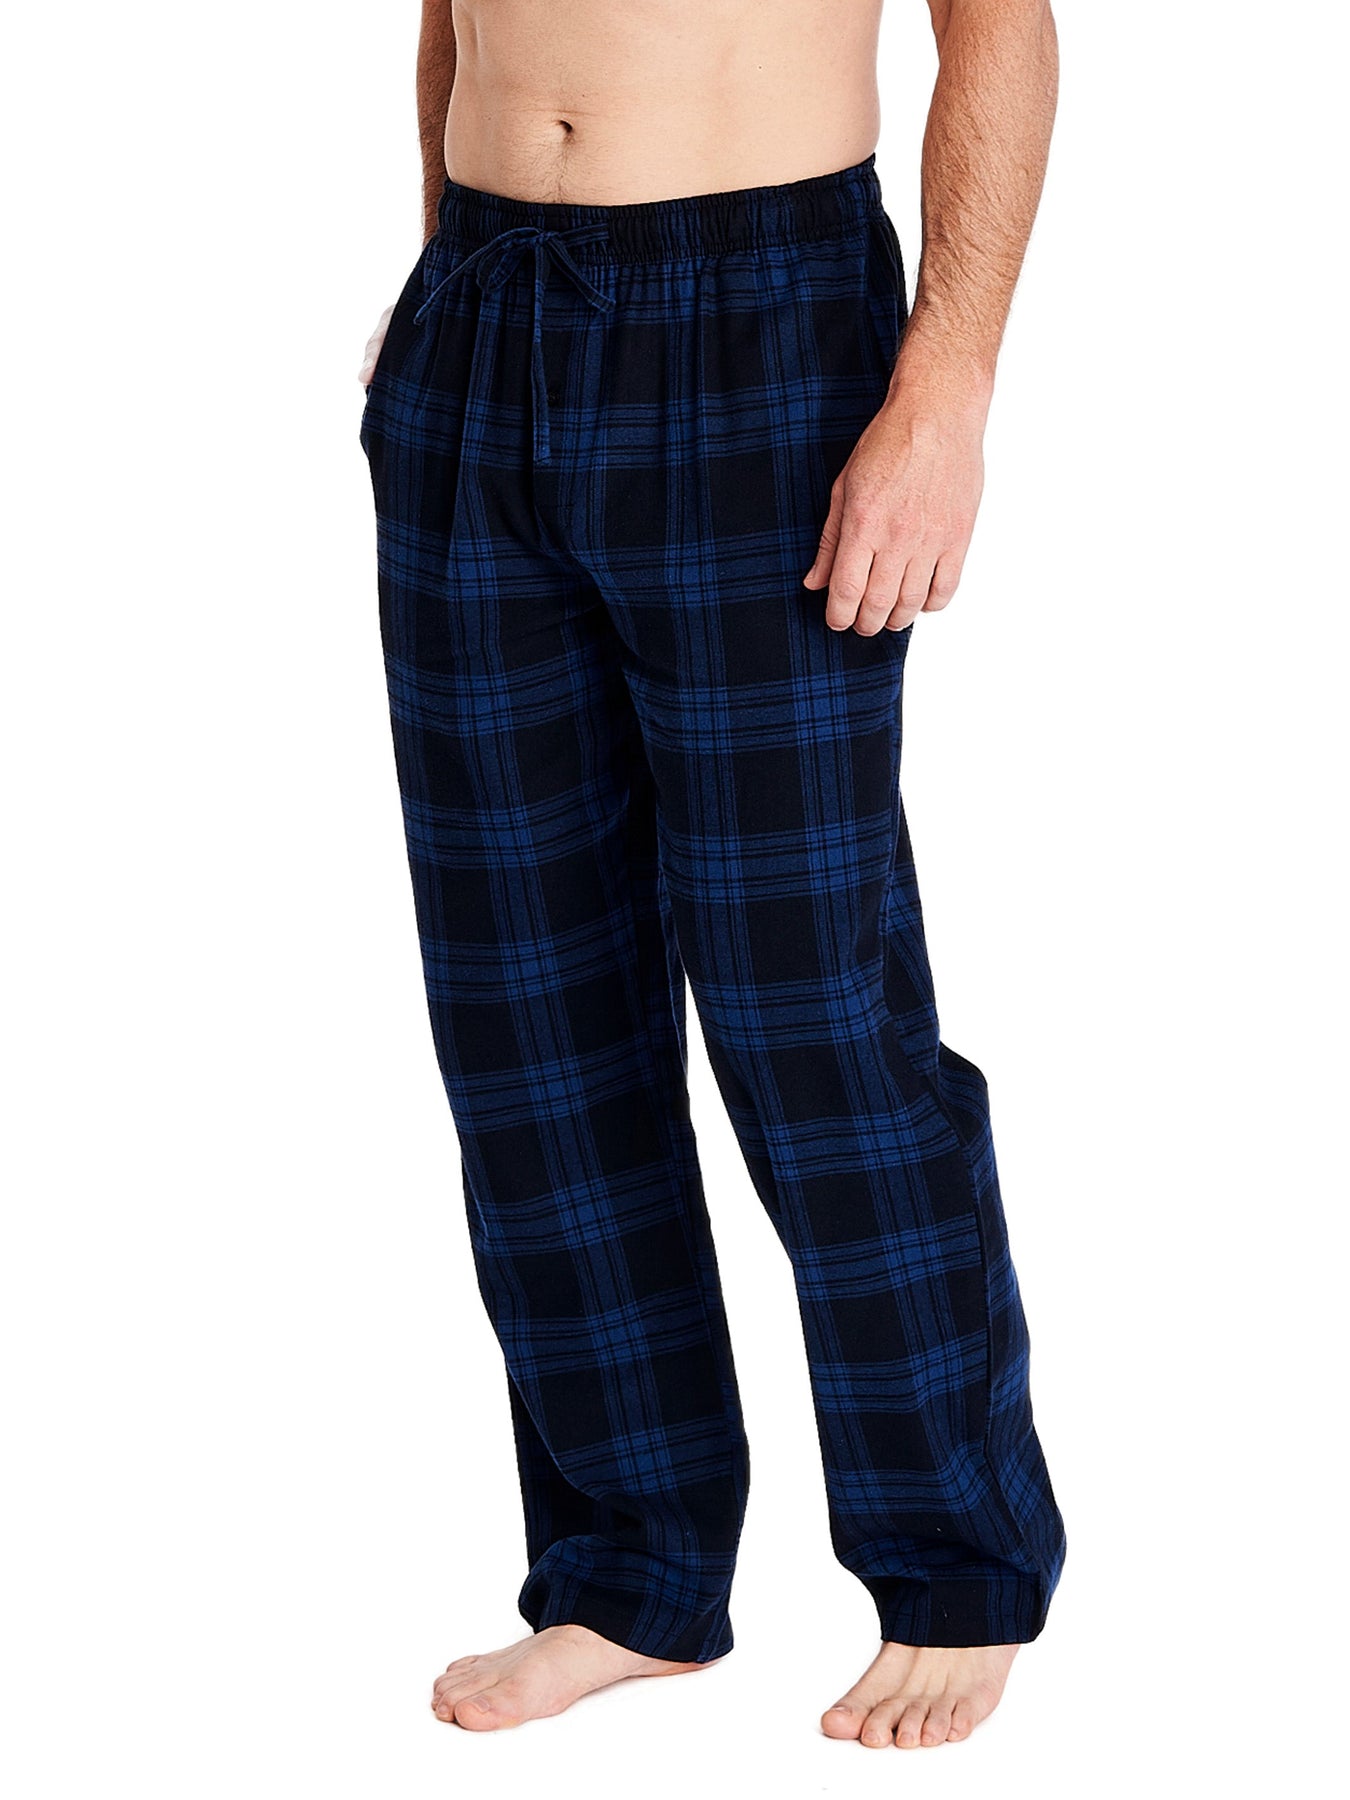 Mens FleeceLined Flannel Lounge Pants  Sleepwear at LLBean